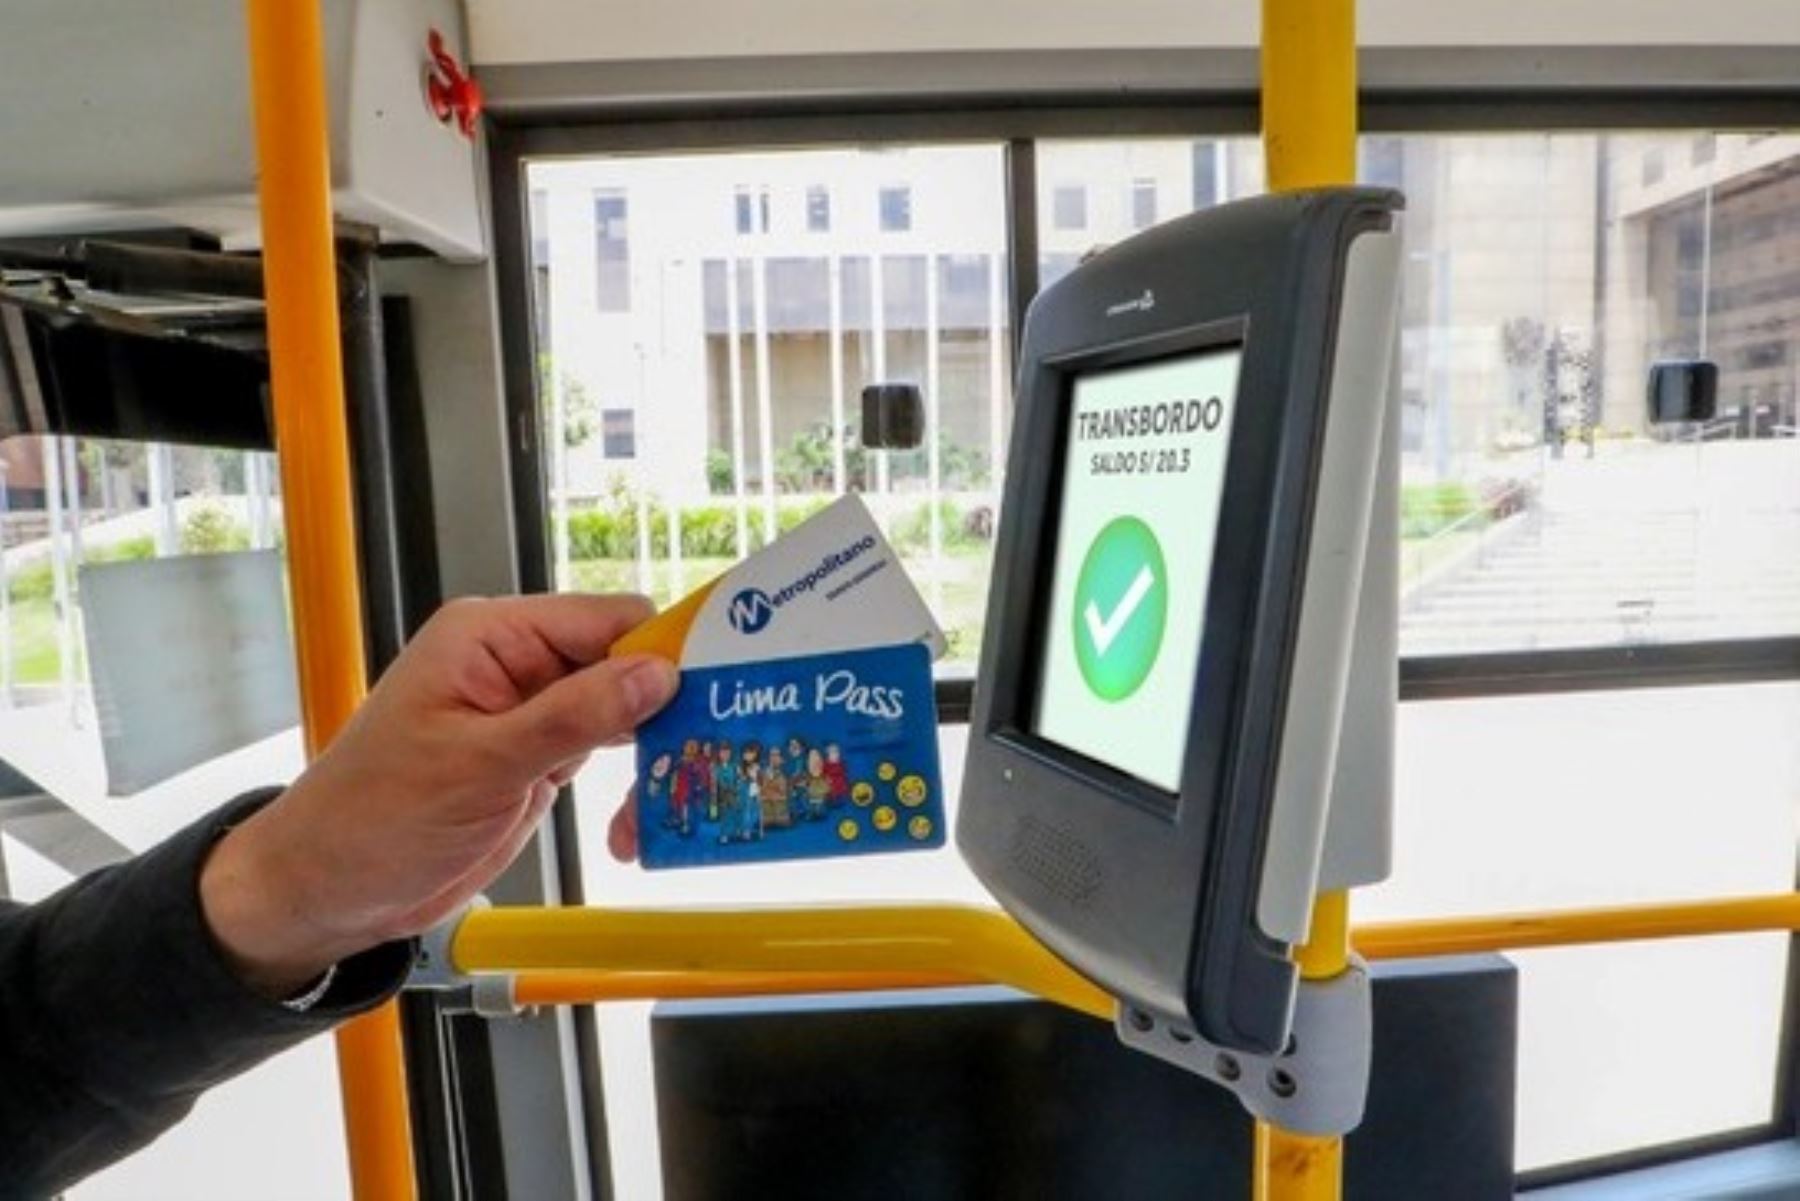 Corredores rojo y amarillo: desde el lunes 28 se conectarán viajes pagando una sola tarifa. Foto: ANDINA/Difusión.